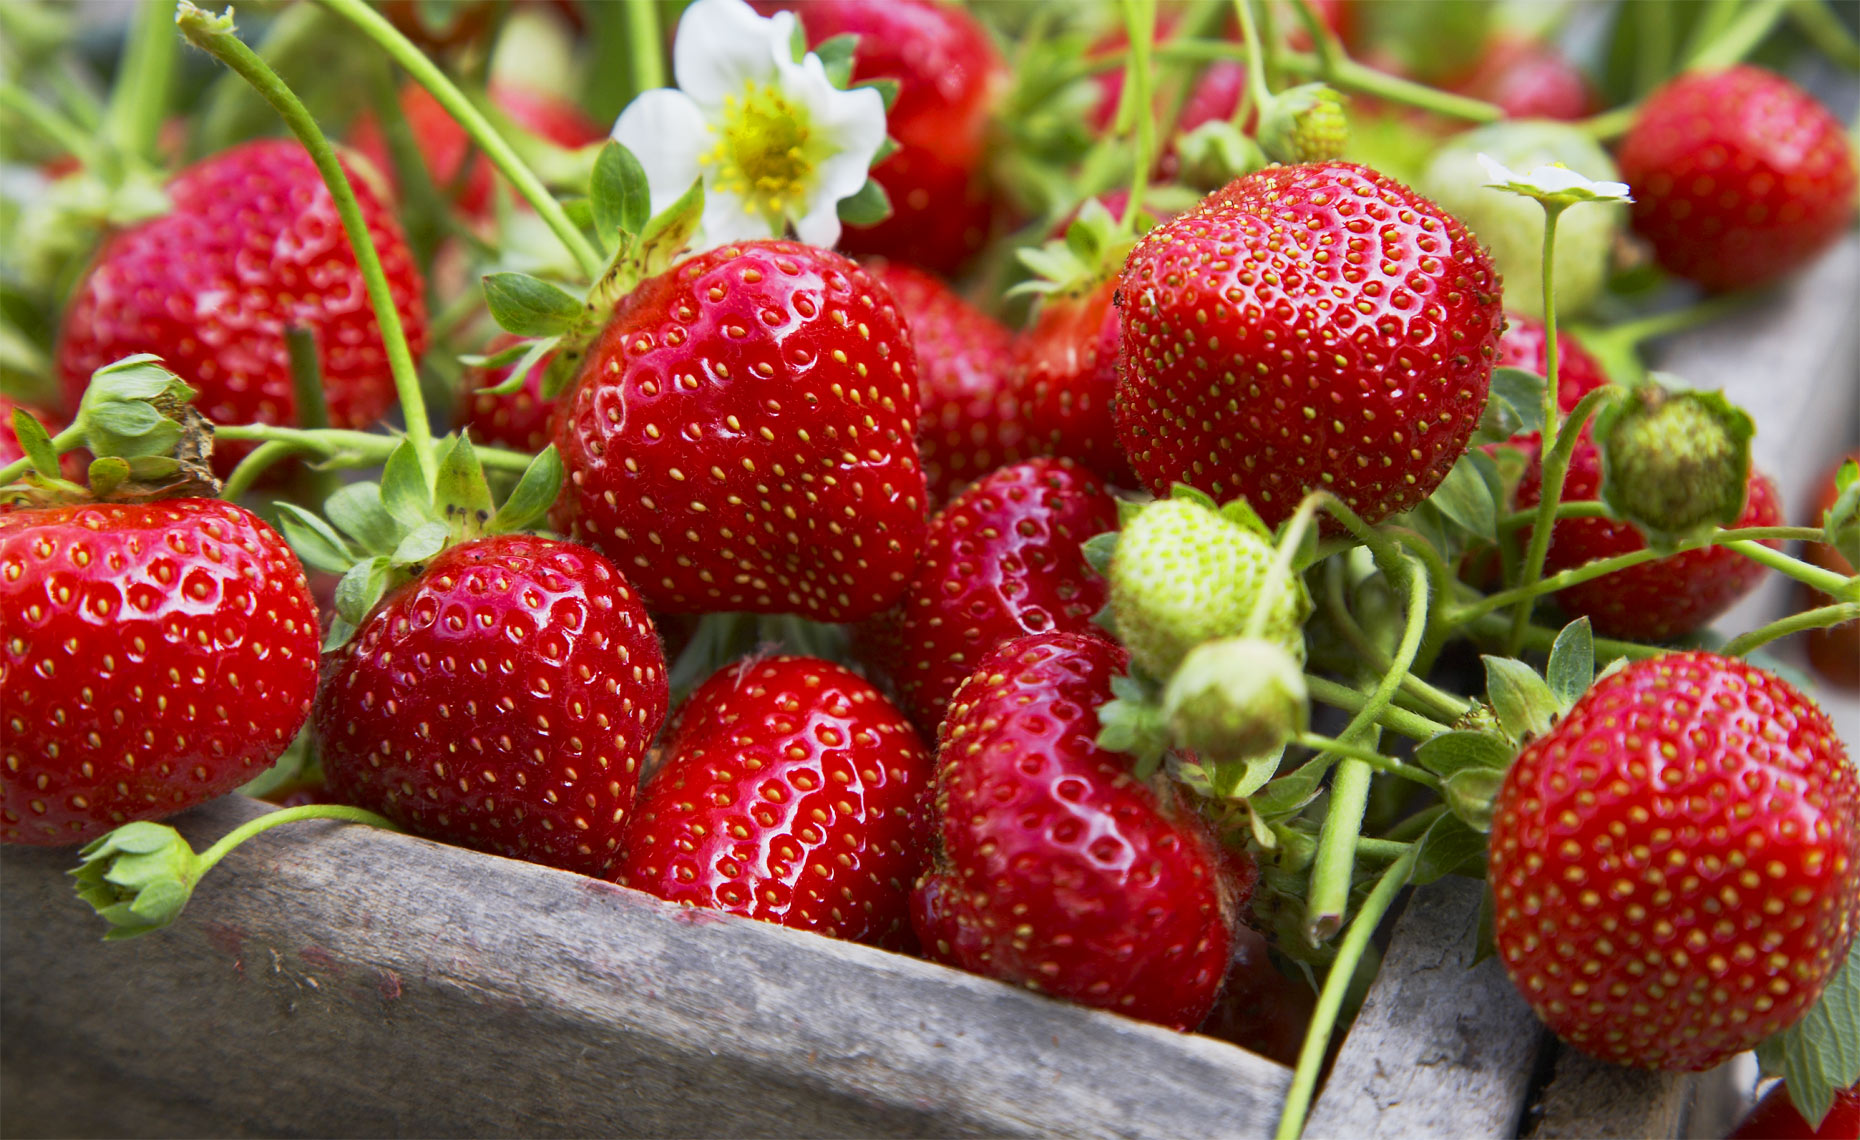 015-Strawberries2